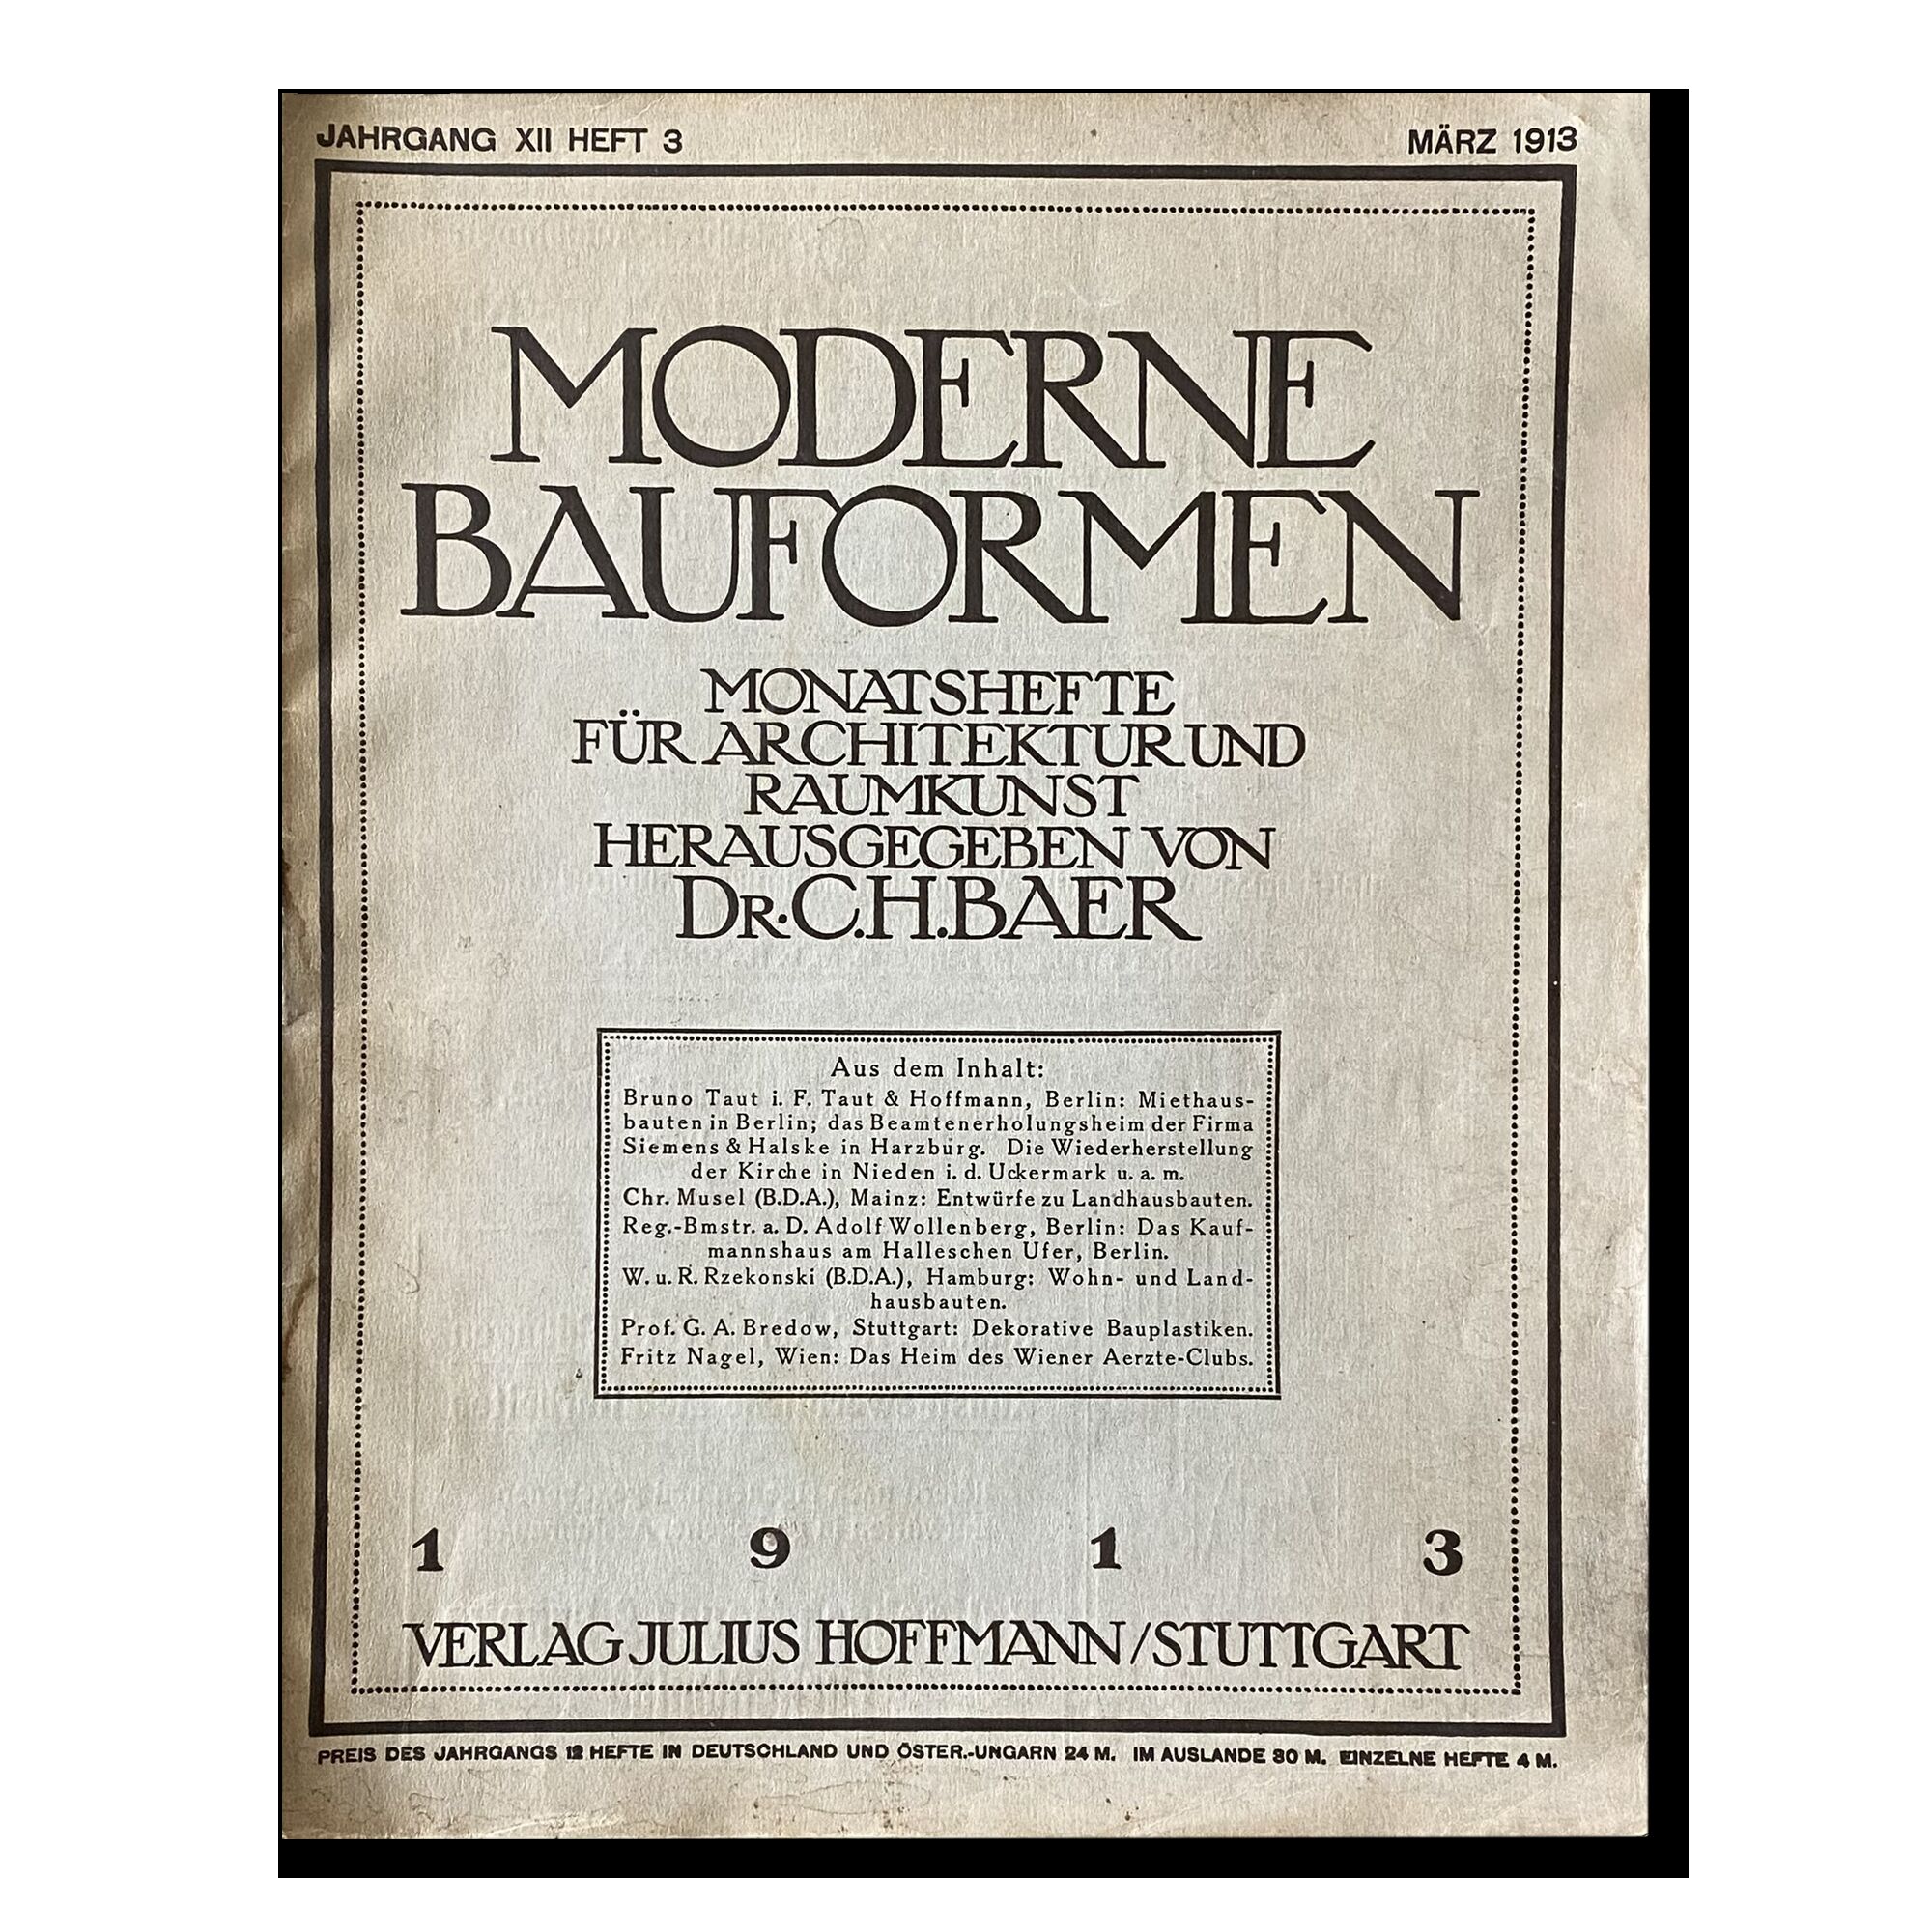 Журнал Moderne Bauformen (Современные формы зданий), выпуск №7